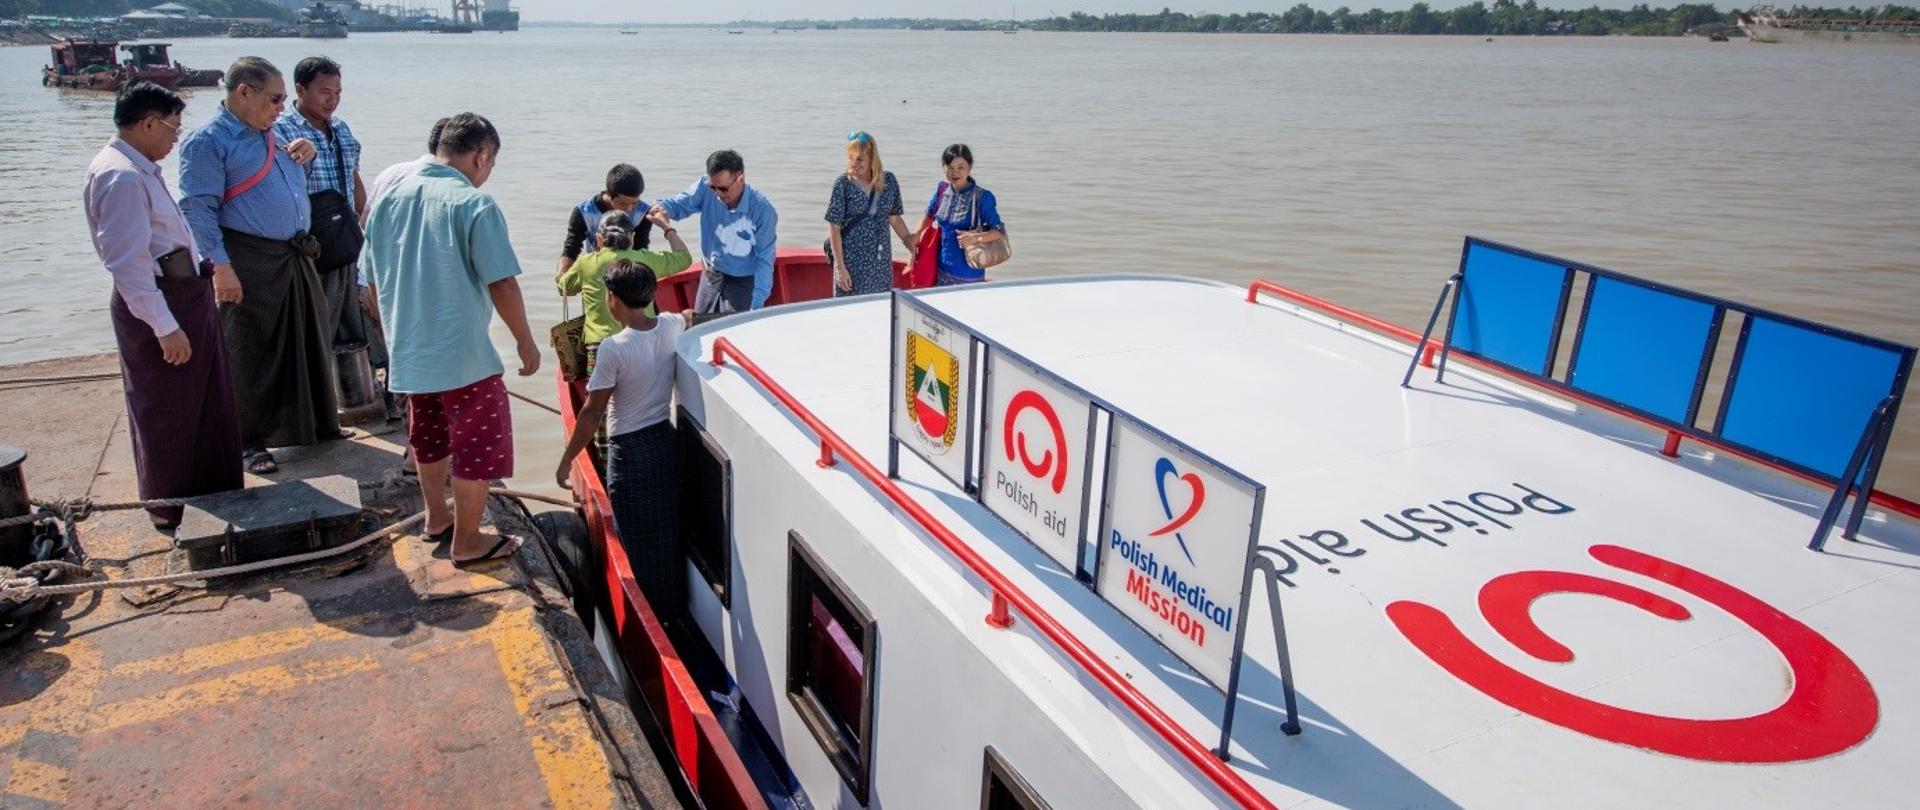 łódź z napisem na dachu Polish aid, na którą wsiadają pasażerowie